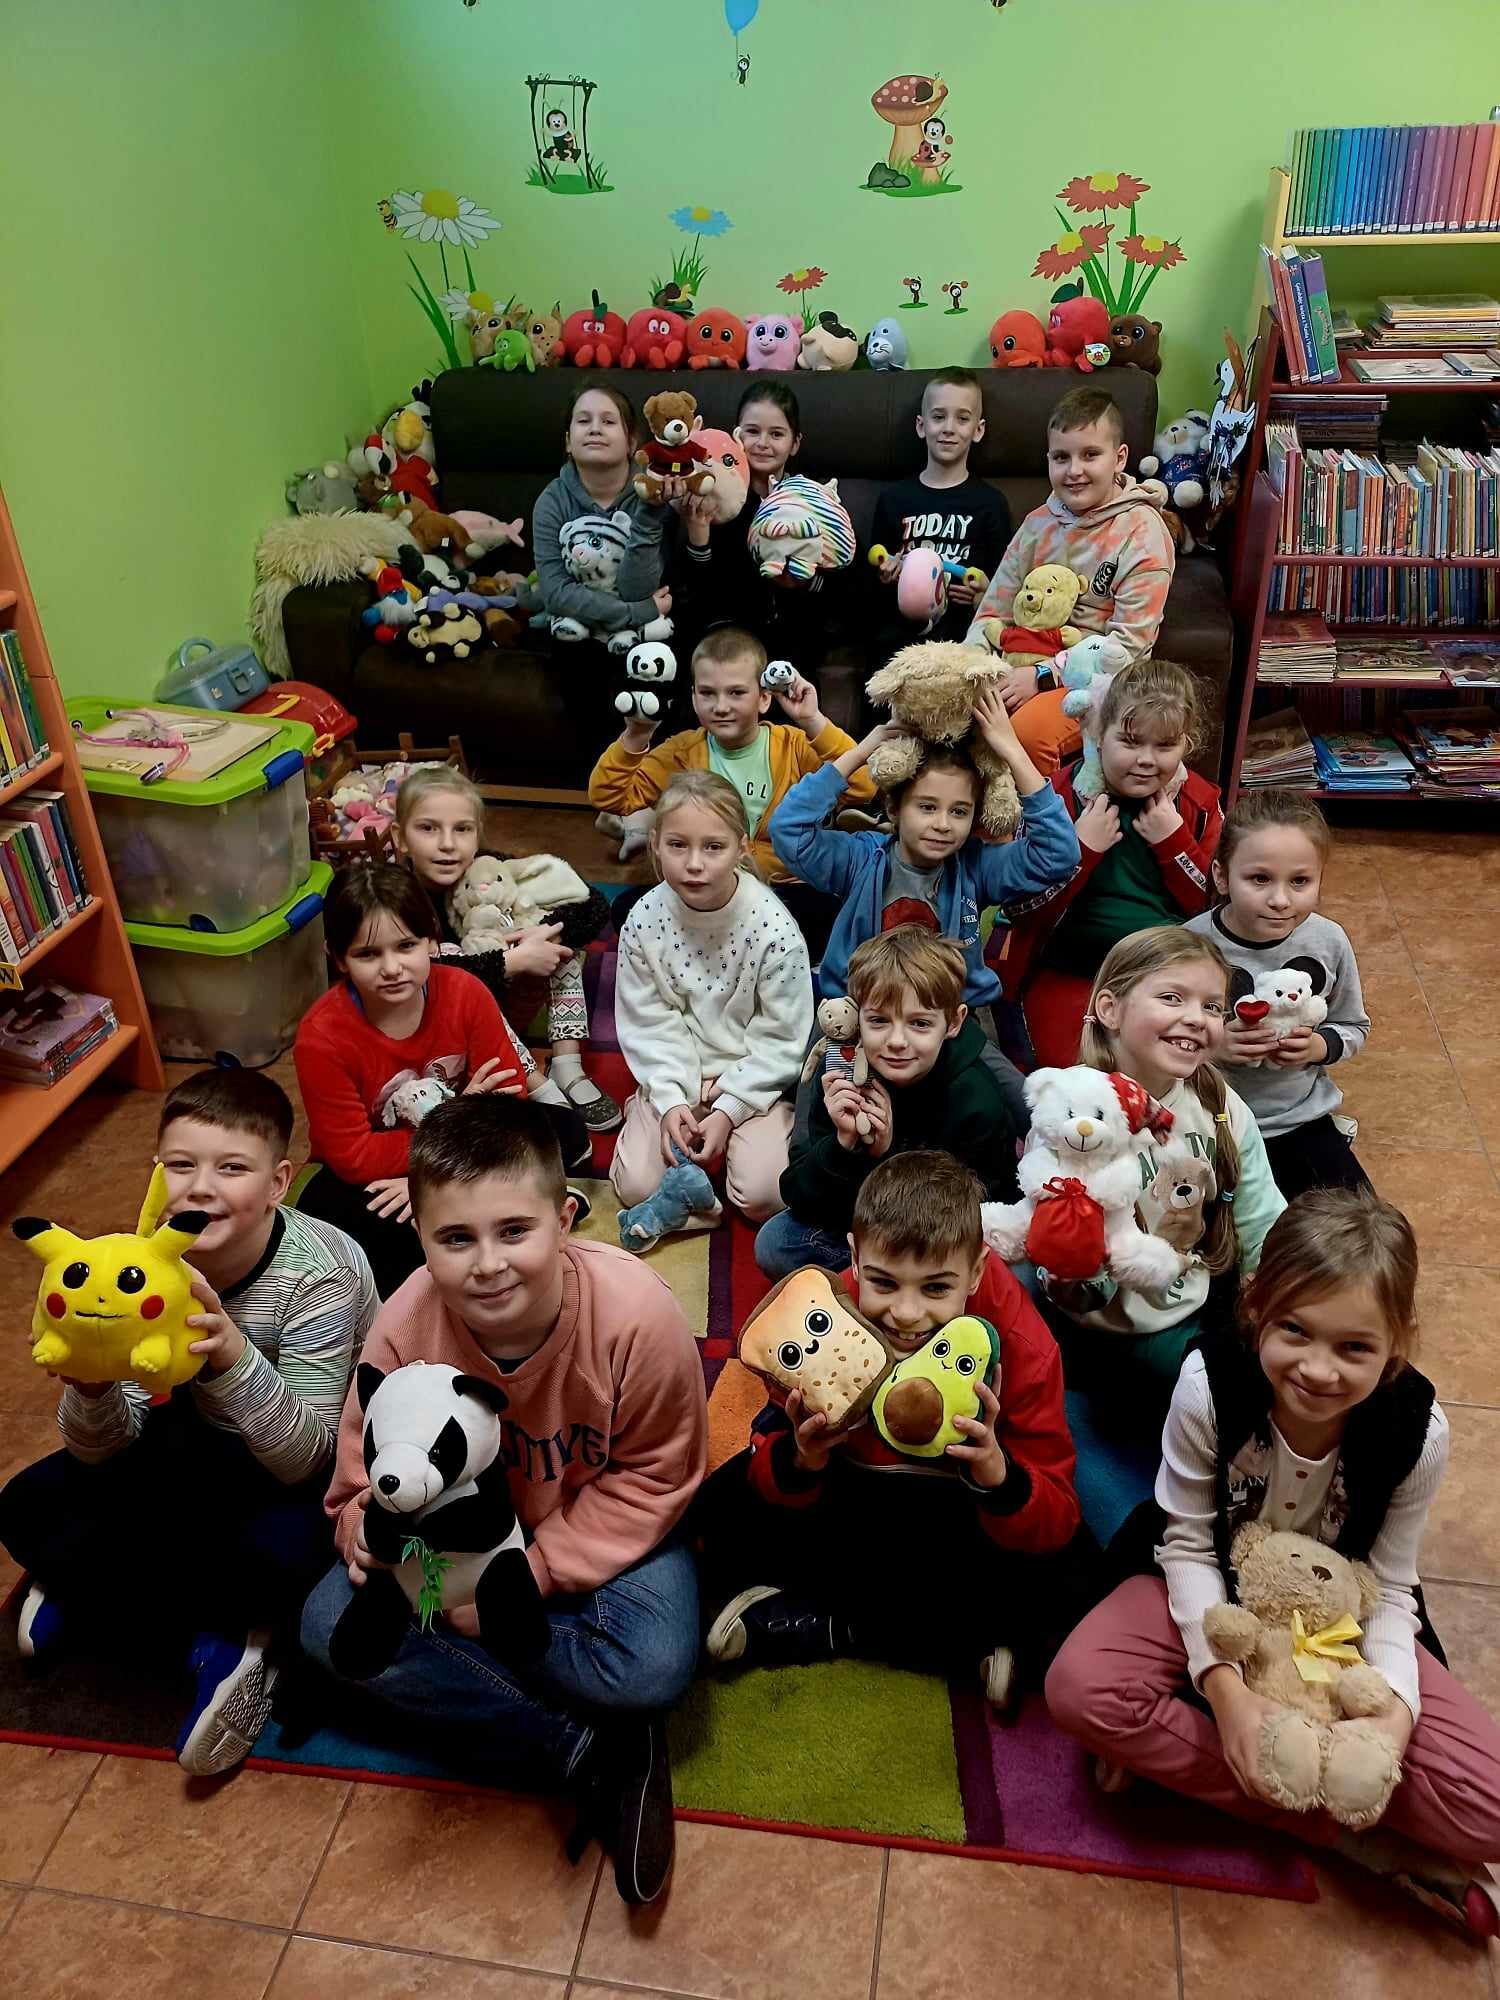 Zdjęcie przedstawia grupę dzieci, które siedzą na kolorowym dywanie, a w rękach trzymają pluszowe maskotki.